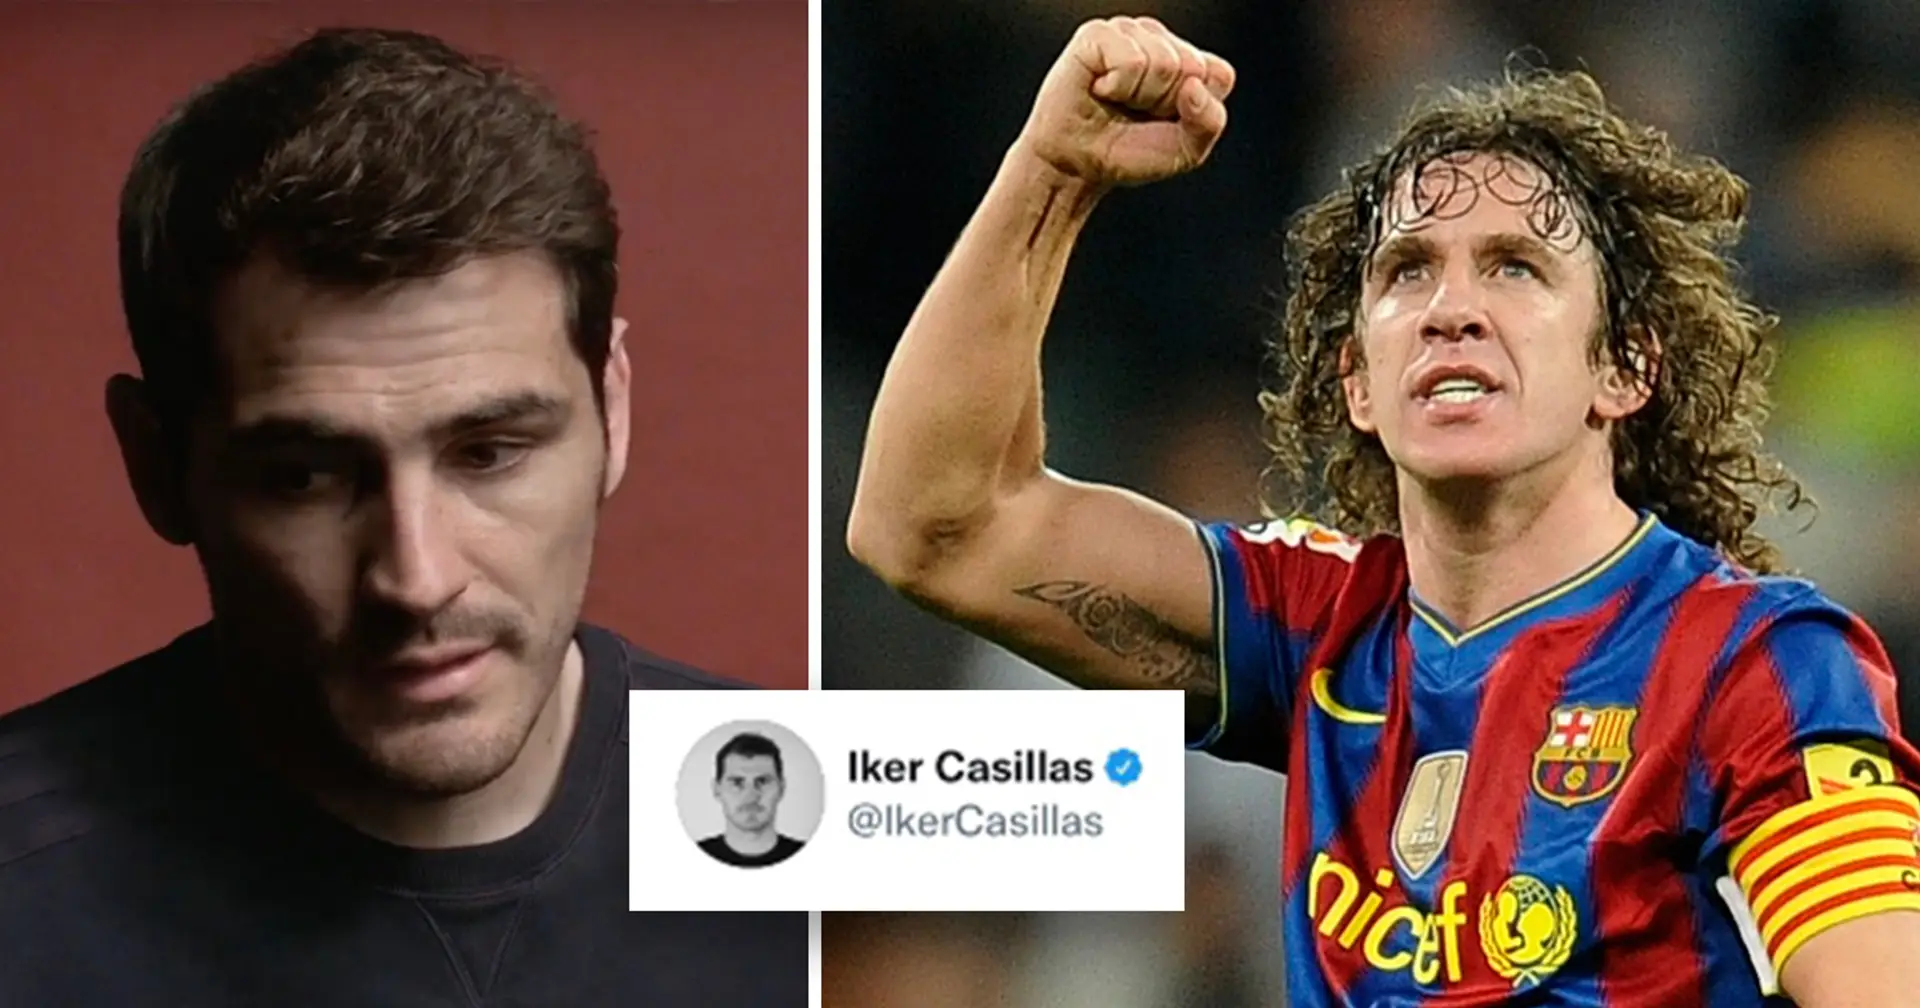 "Il est temps de raconter notre histoire, Iker": Iker Casillas se révèle gay, Carles Puyol réagit immédiatement